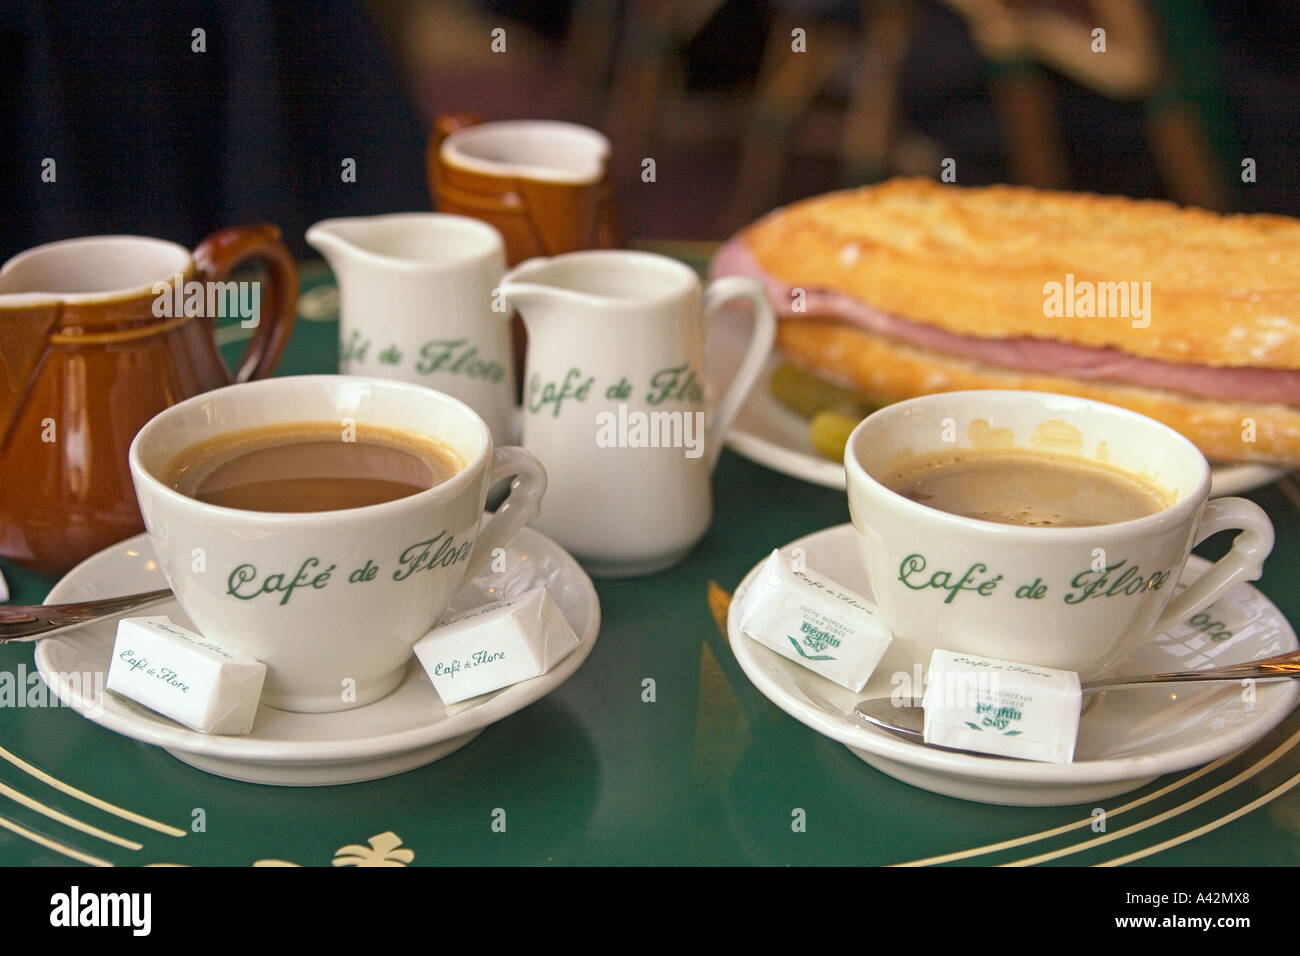 Paris St German Cafe de Flore table with cafe creme and sandwich Stock Photo